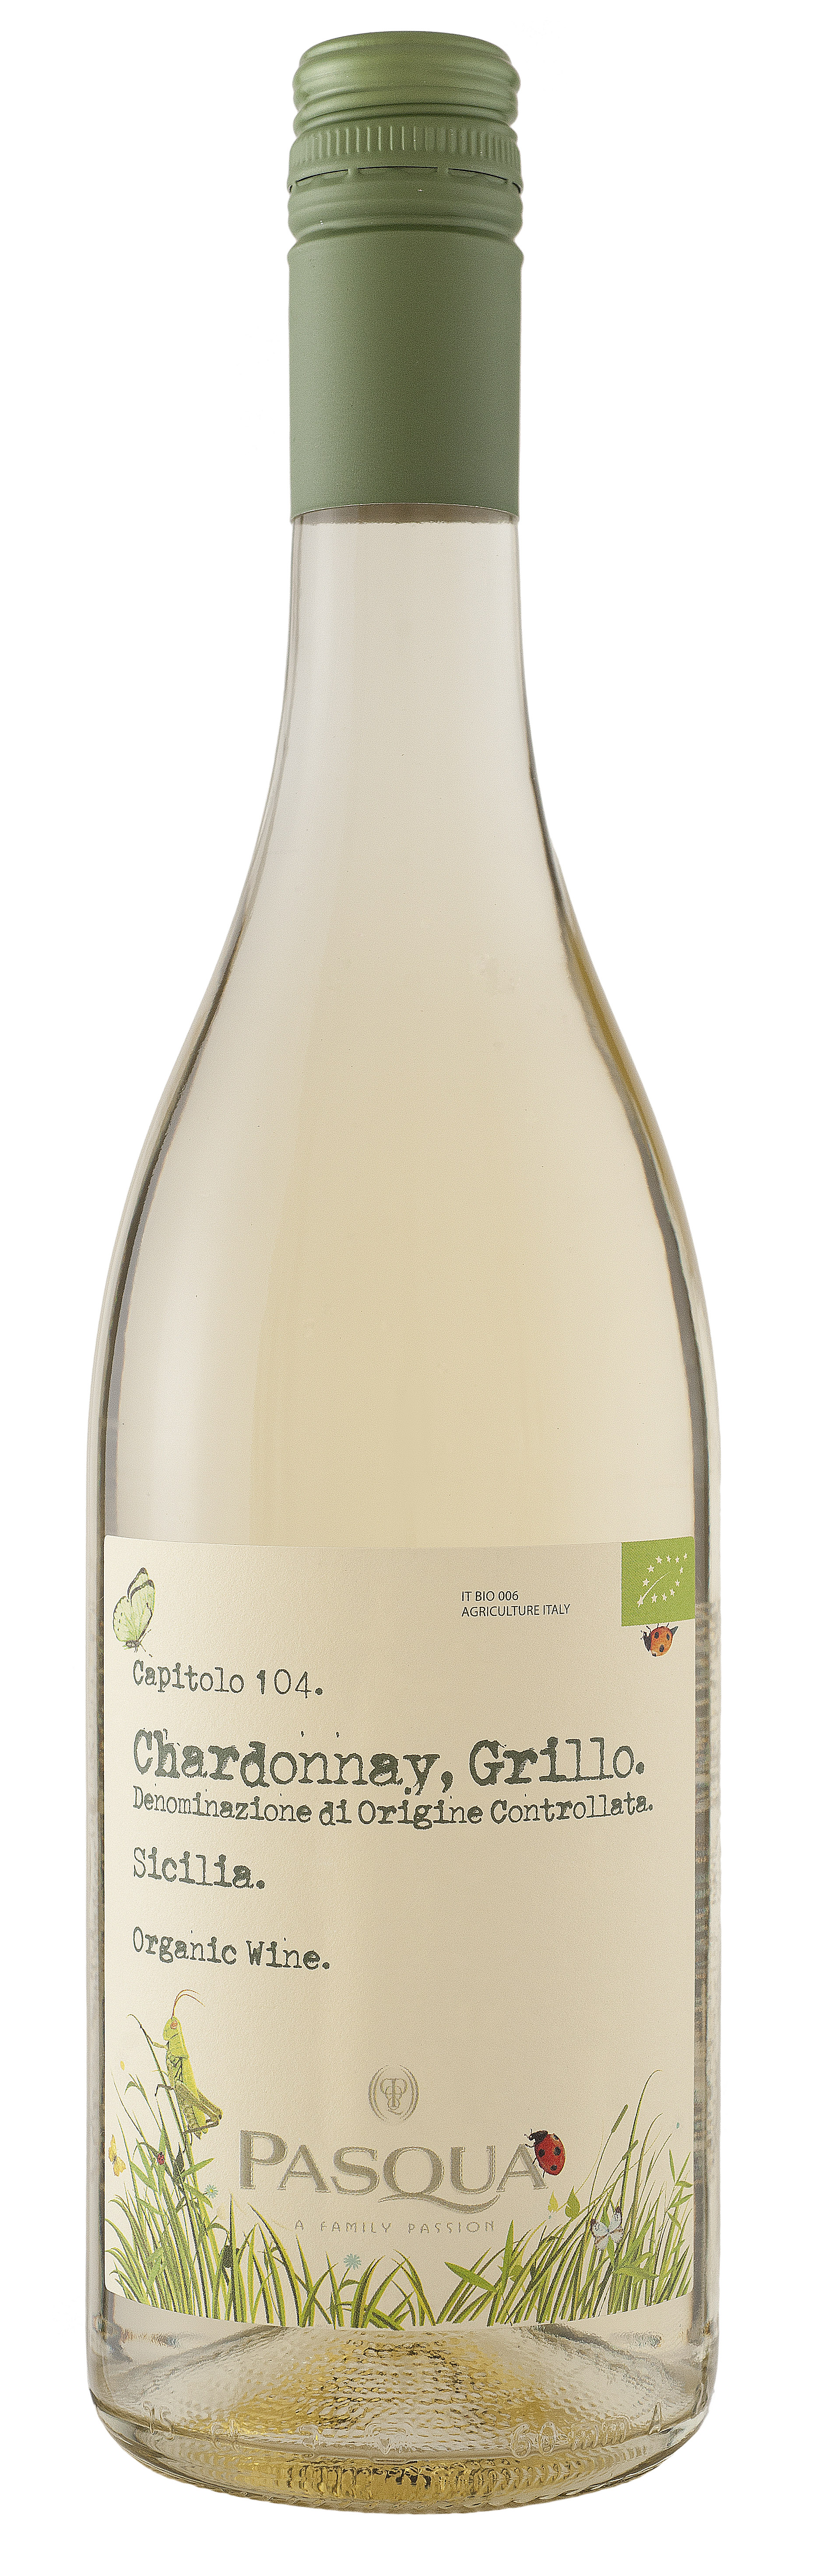 Pasqua Terre Siciliane Chardonnay-Grillo Organic 2020 (BIO)